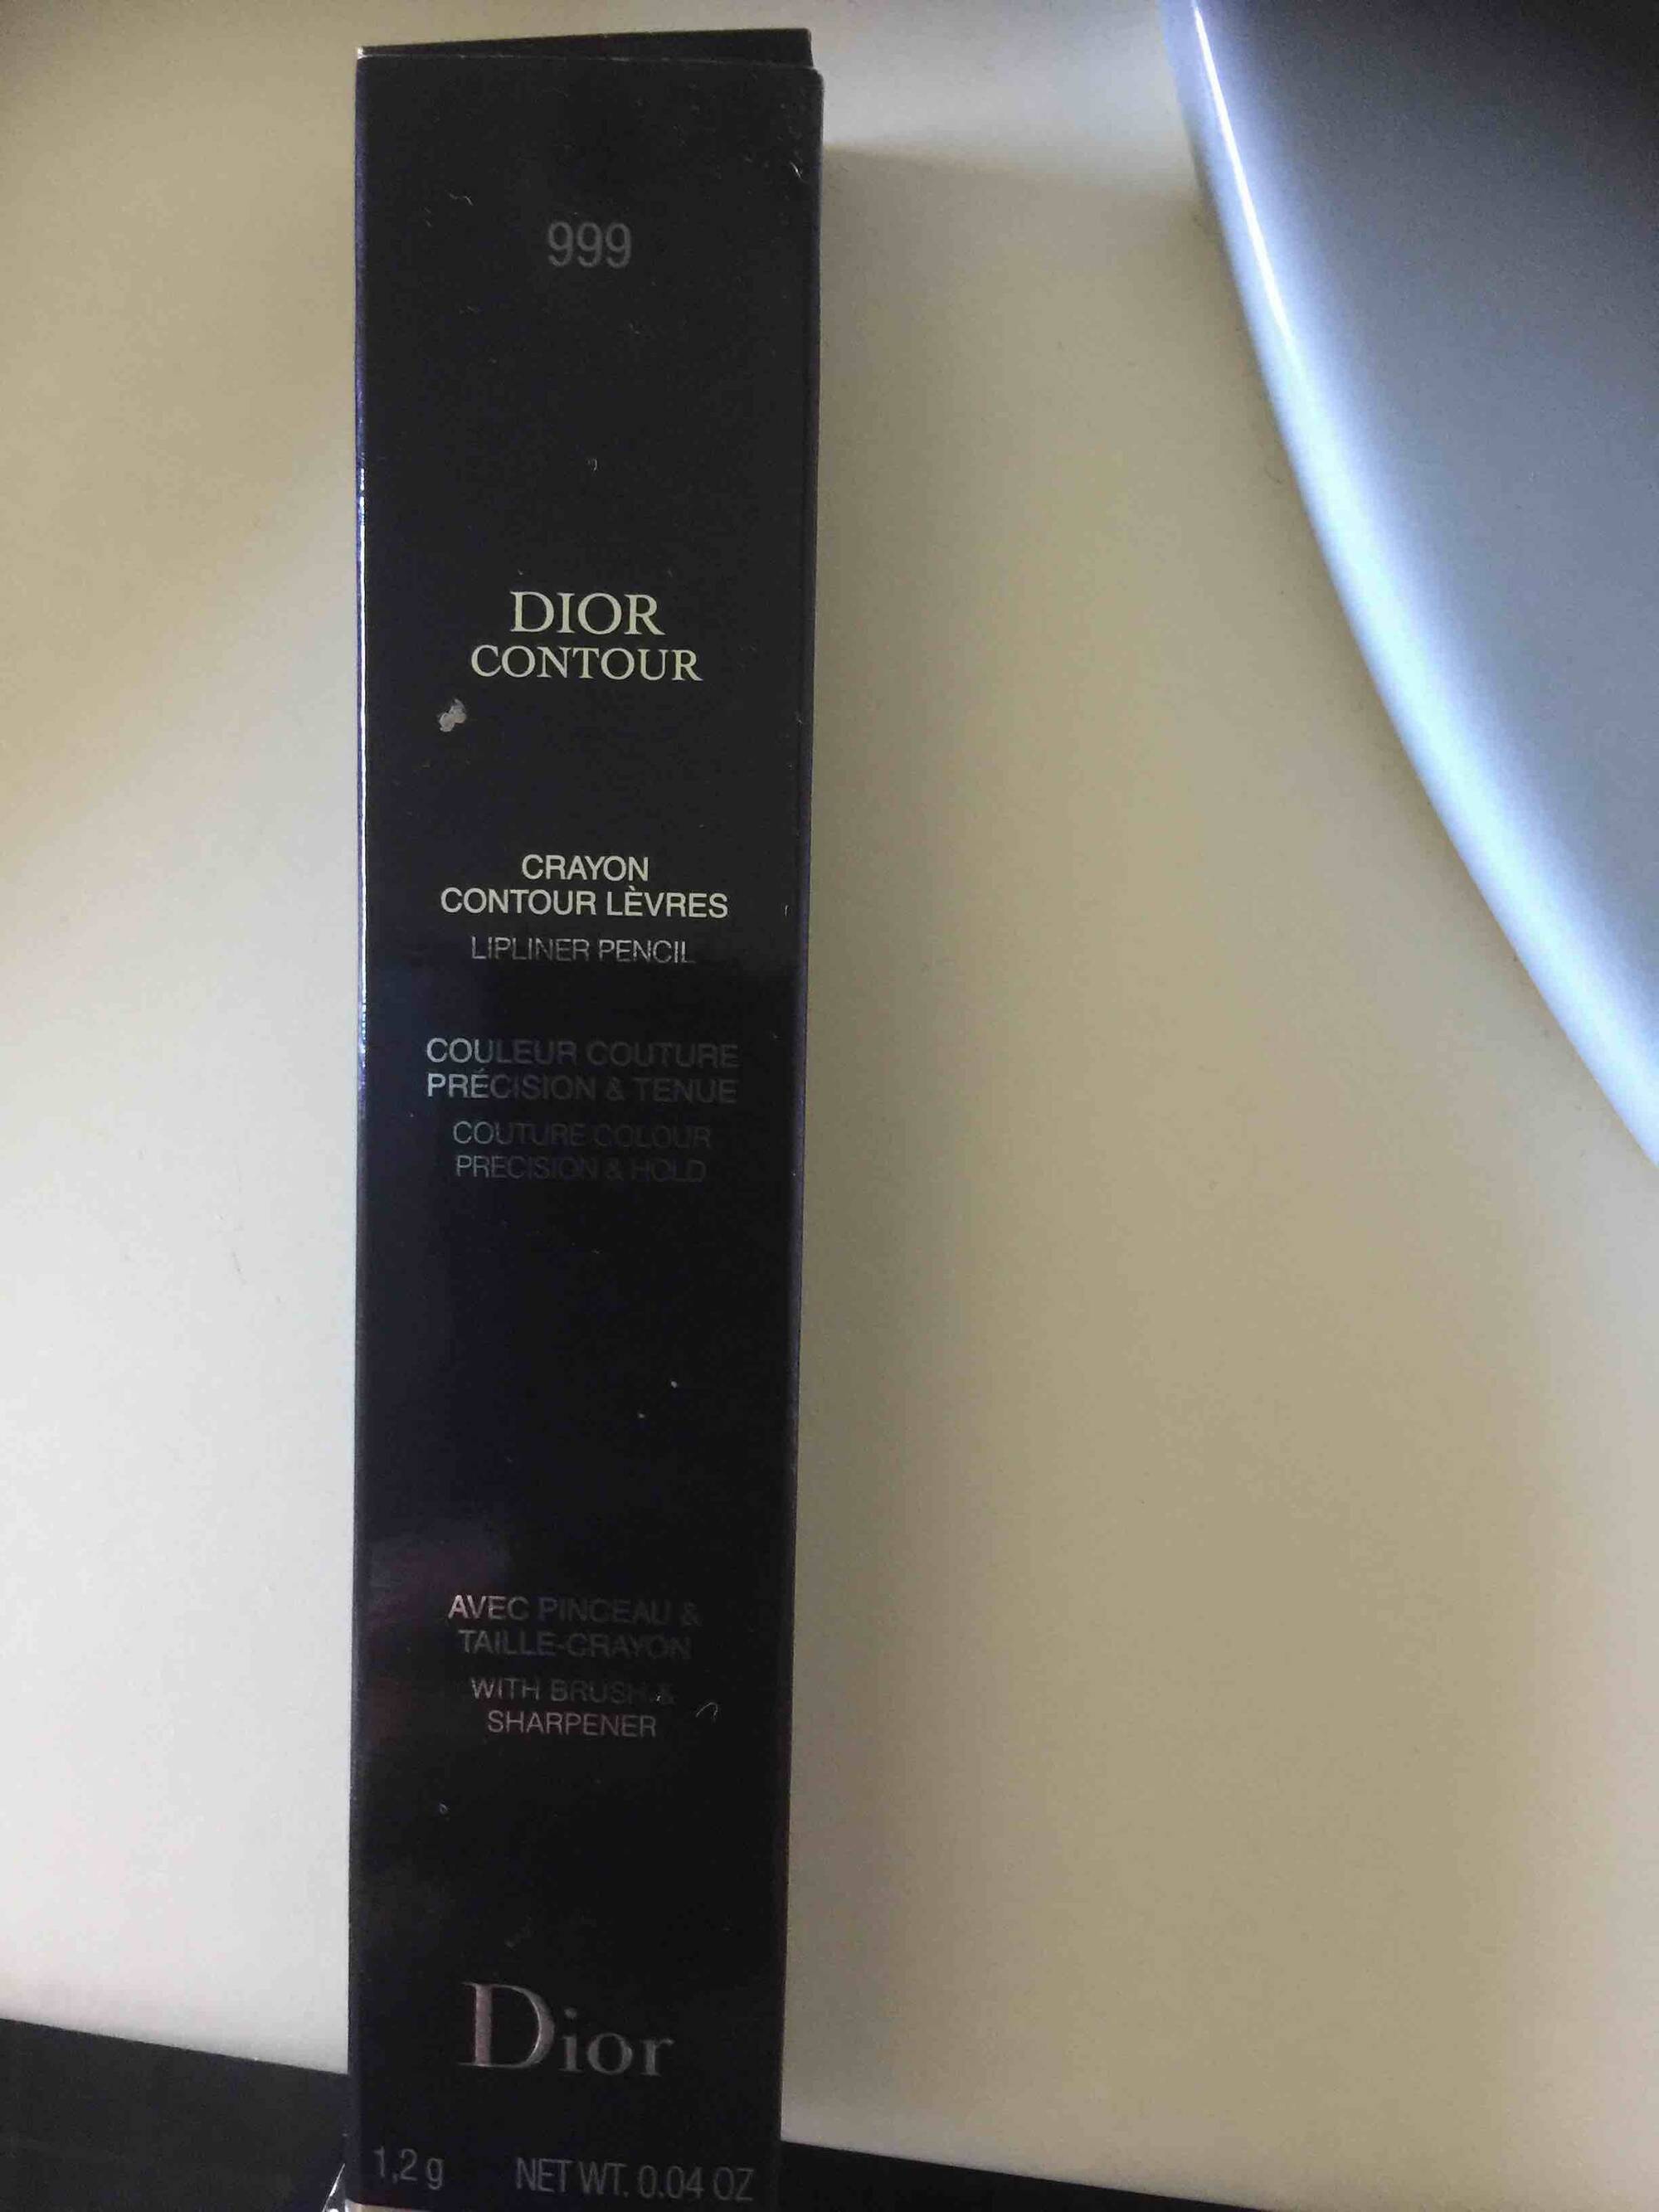 DIOR - Dior contour - Crayon contour lèvres